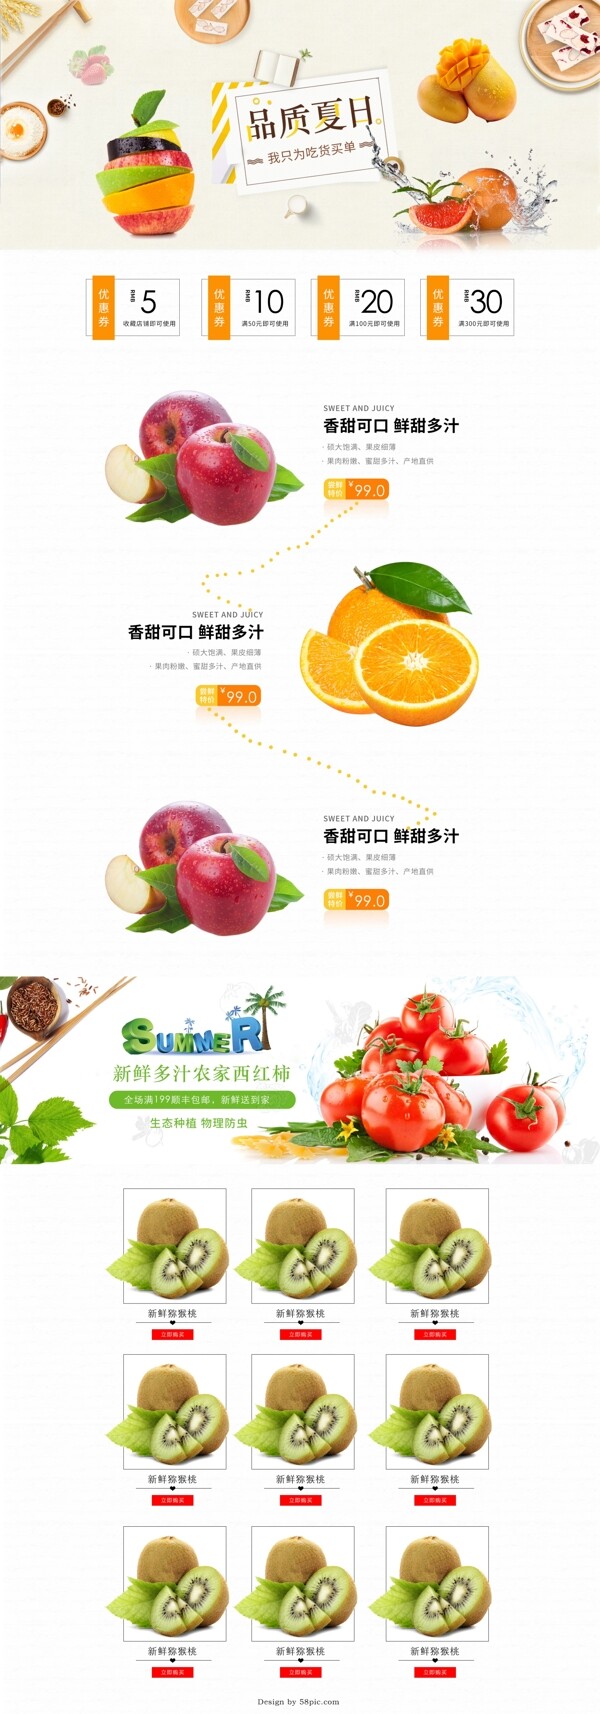 淘宝天猫京东电商夏季美食零食水果首页海报